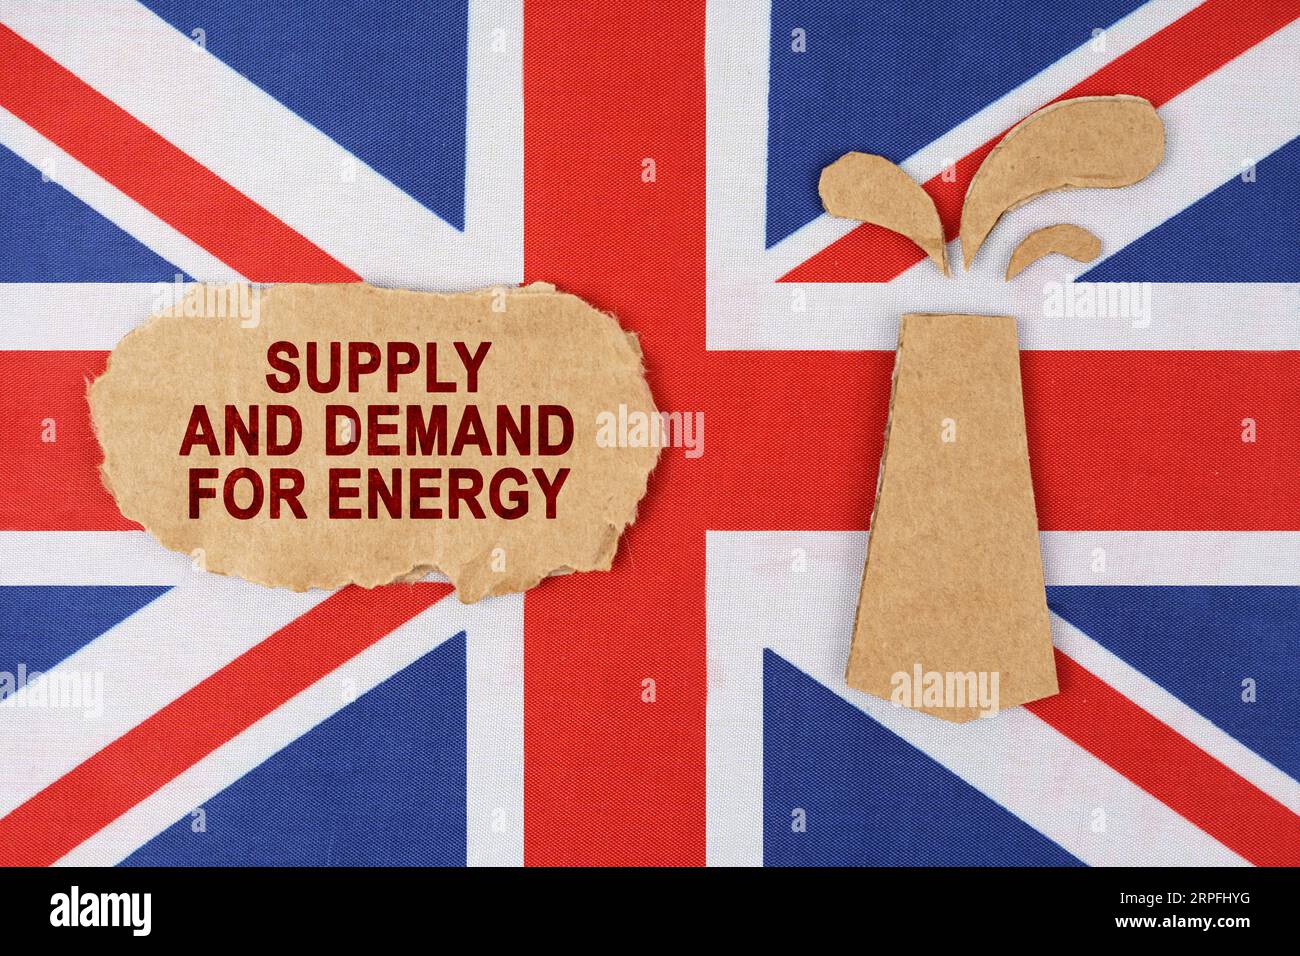 Sulla bandiera della Gran Bretagna c'è una piattaforma petrolifera tagliata di cartone e un cartello con l'iscrizione - offerta e domanda di energia. Foto Stock